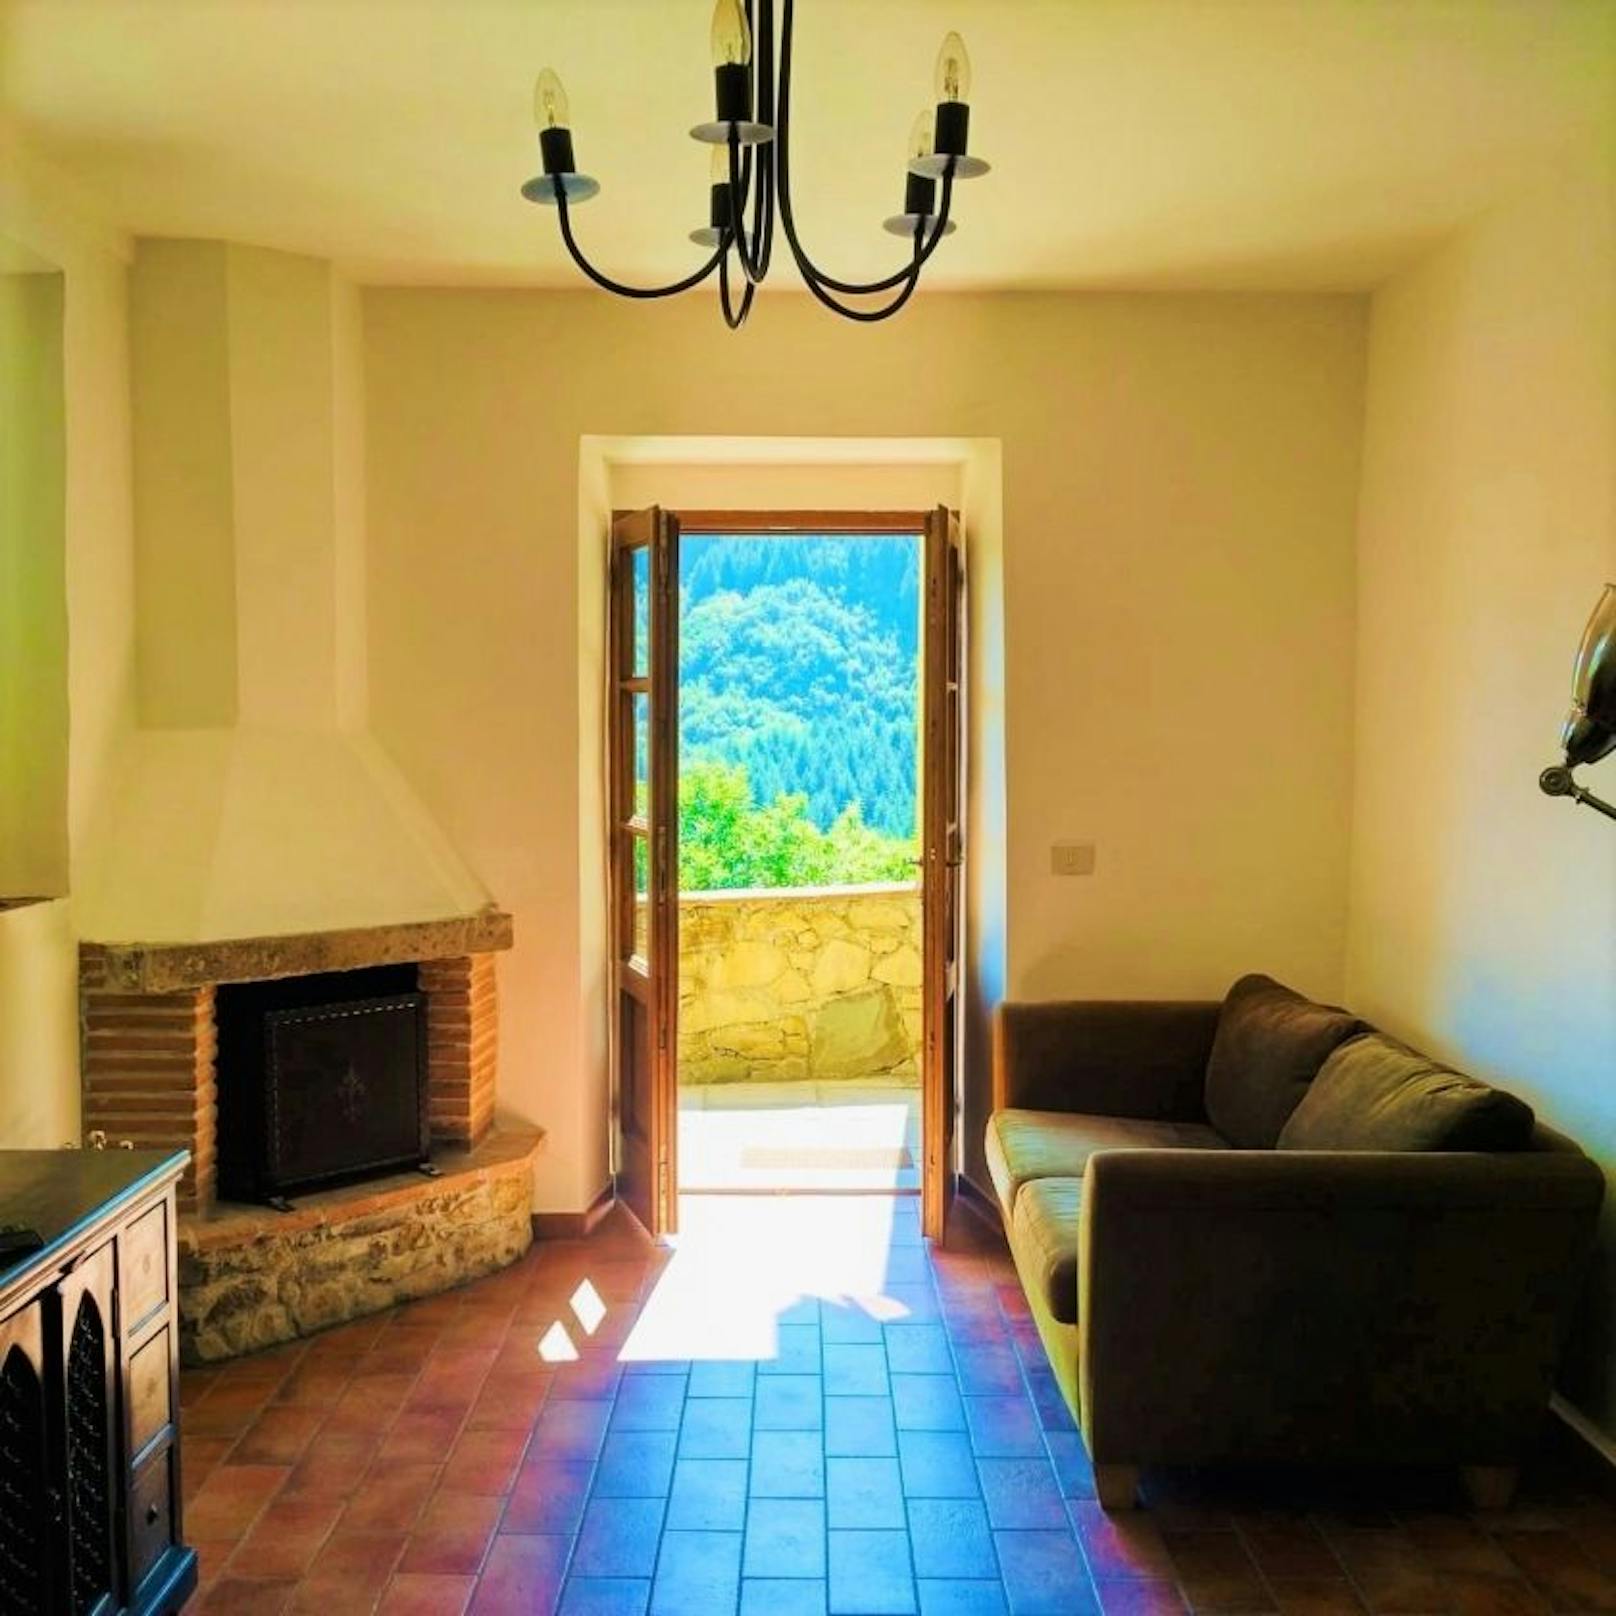 Das Haus in der Toskana kann für den persönlichen Gebrauch, weiterverkauft oder als Mietobjekt verwendet werden.